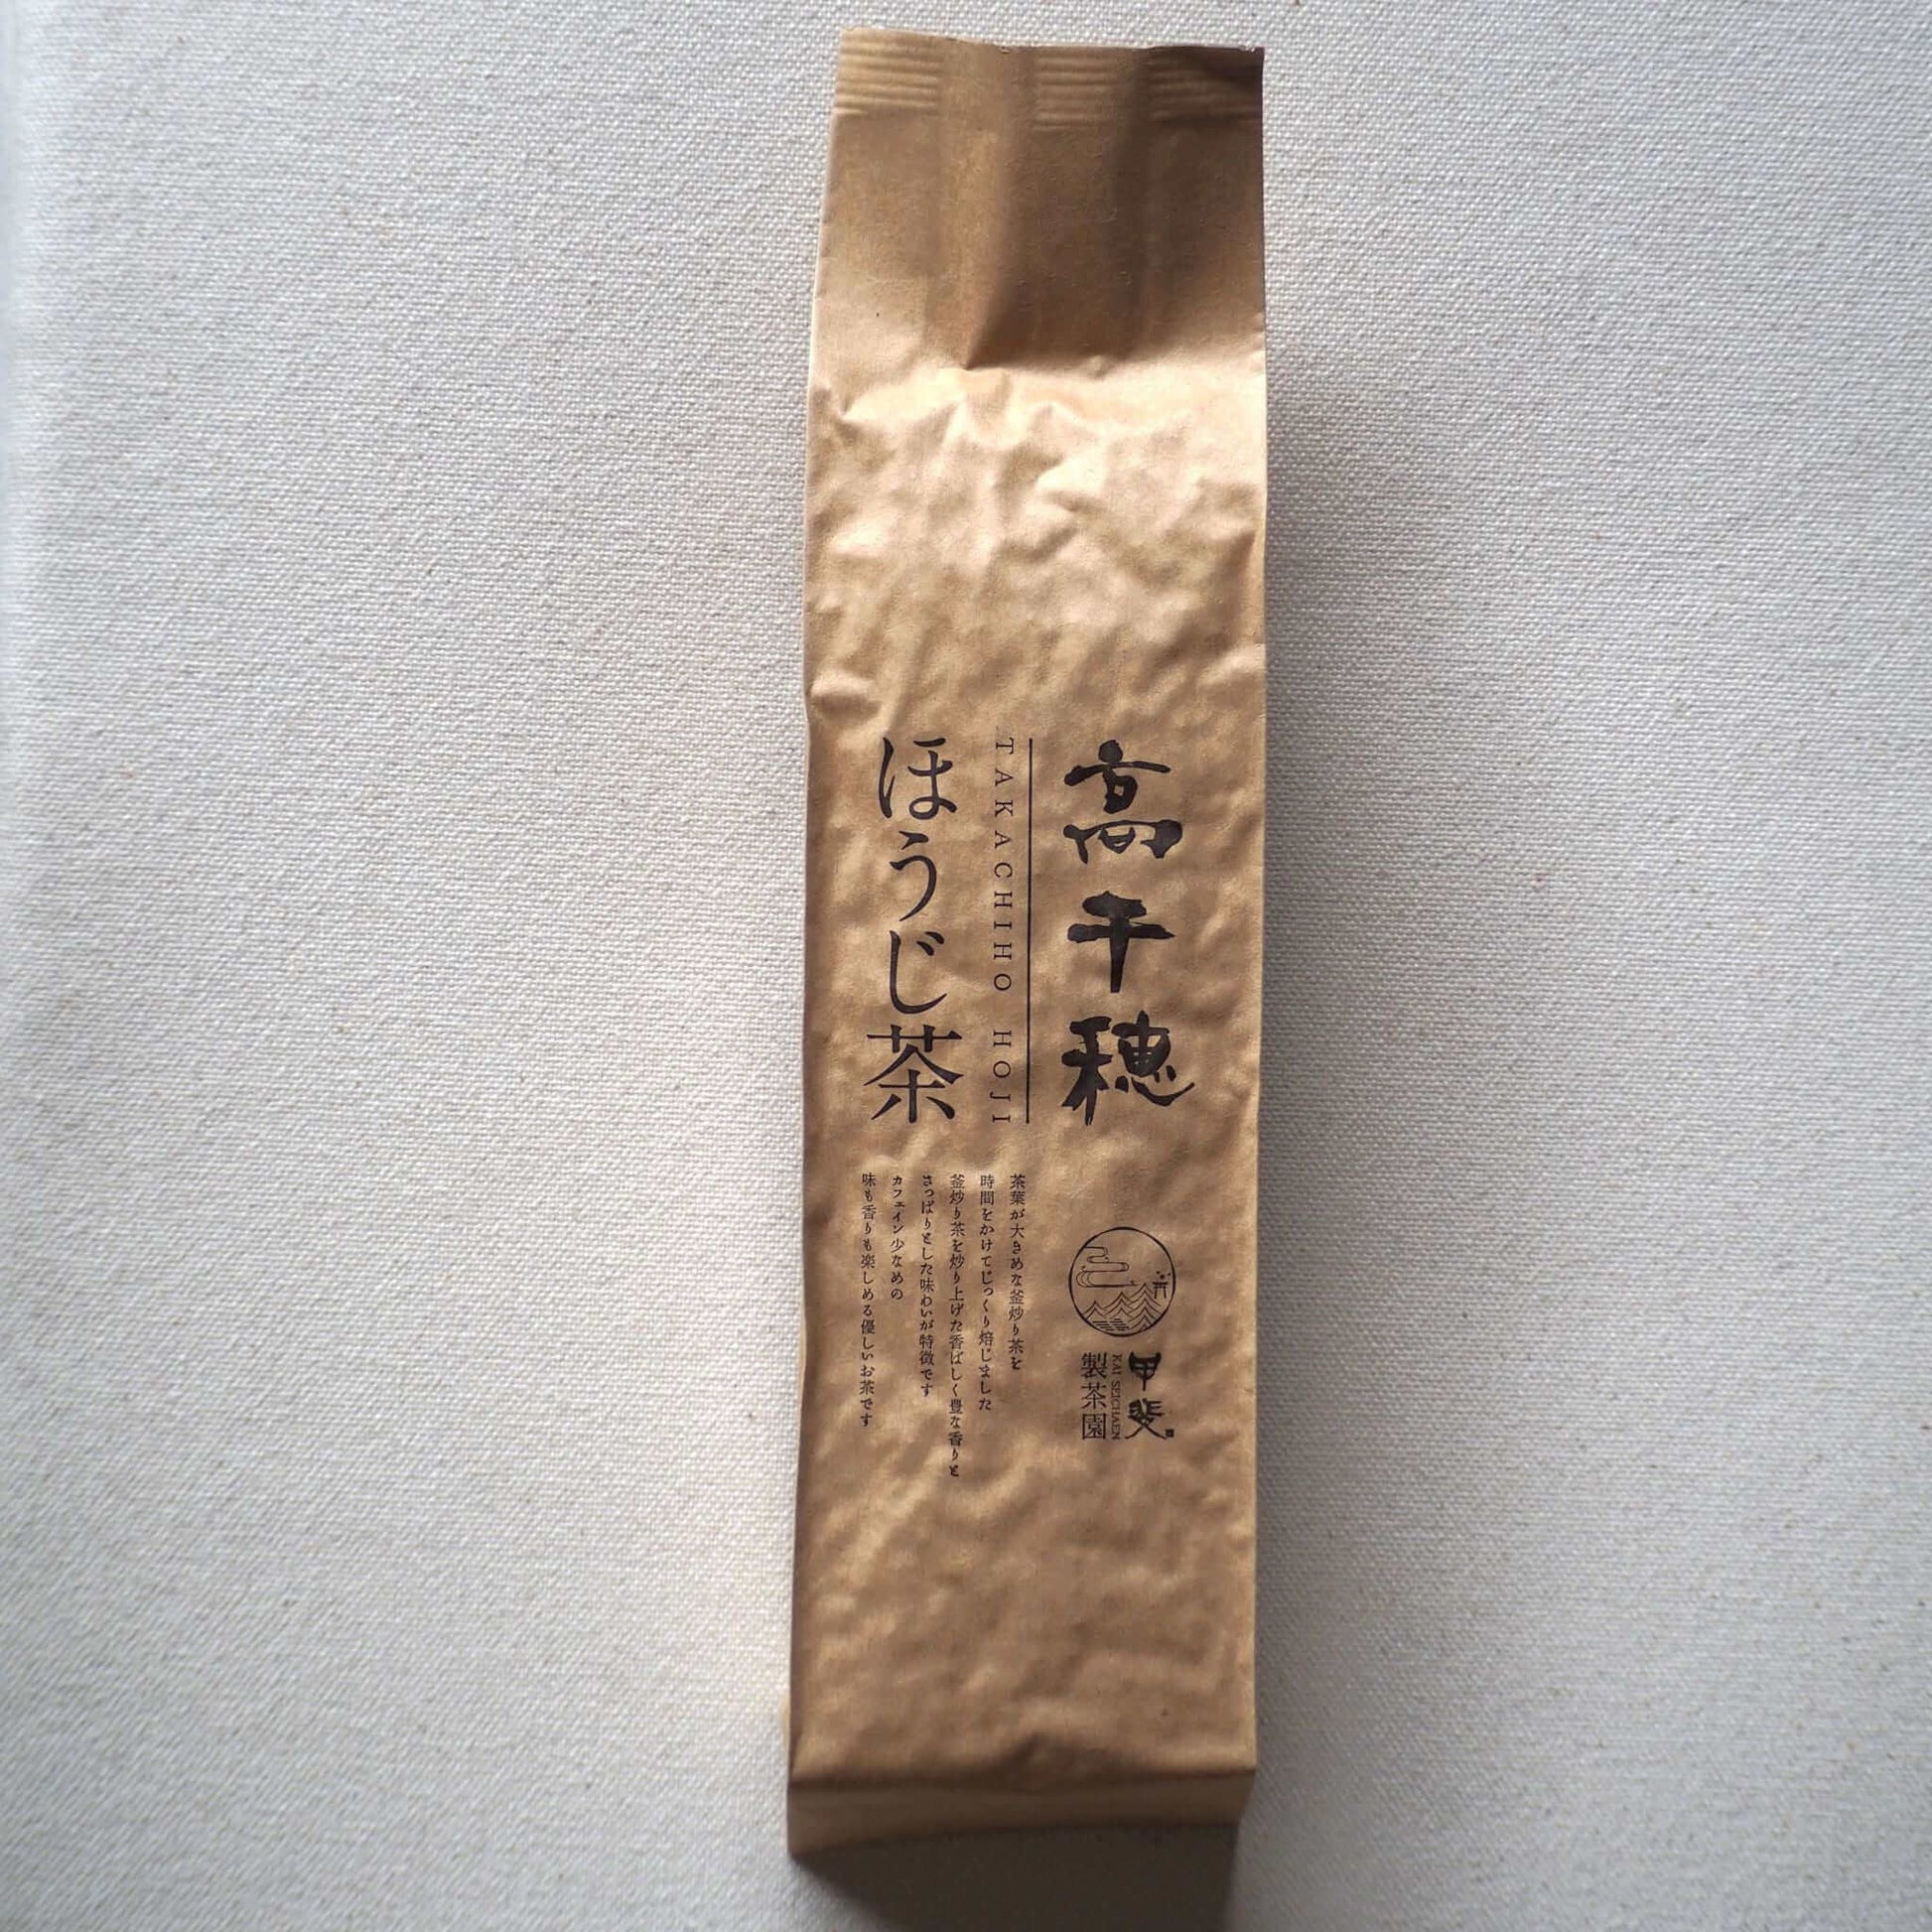 お茶のパッケージ画像です。茶色の袋の中央に、商品名が印字されています。